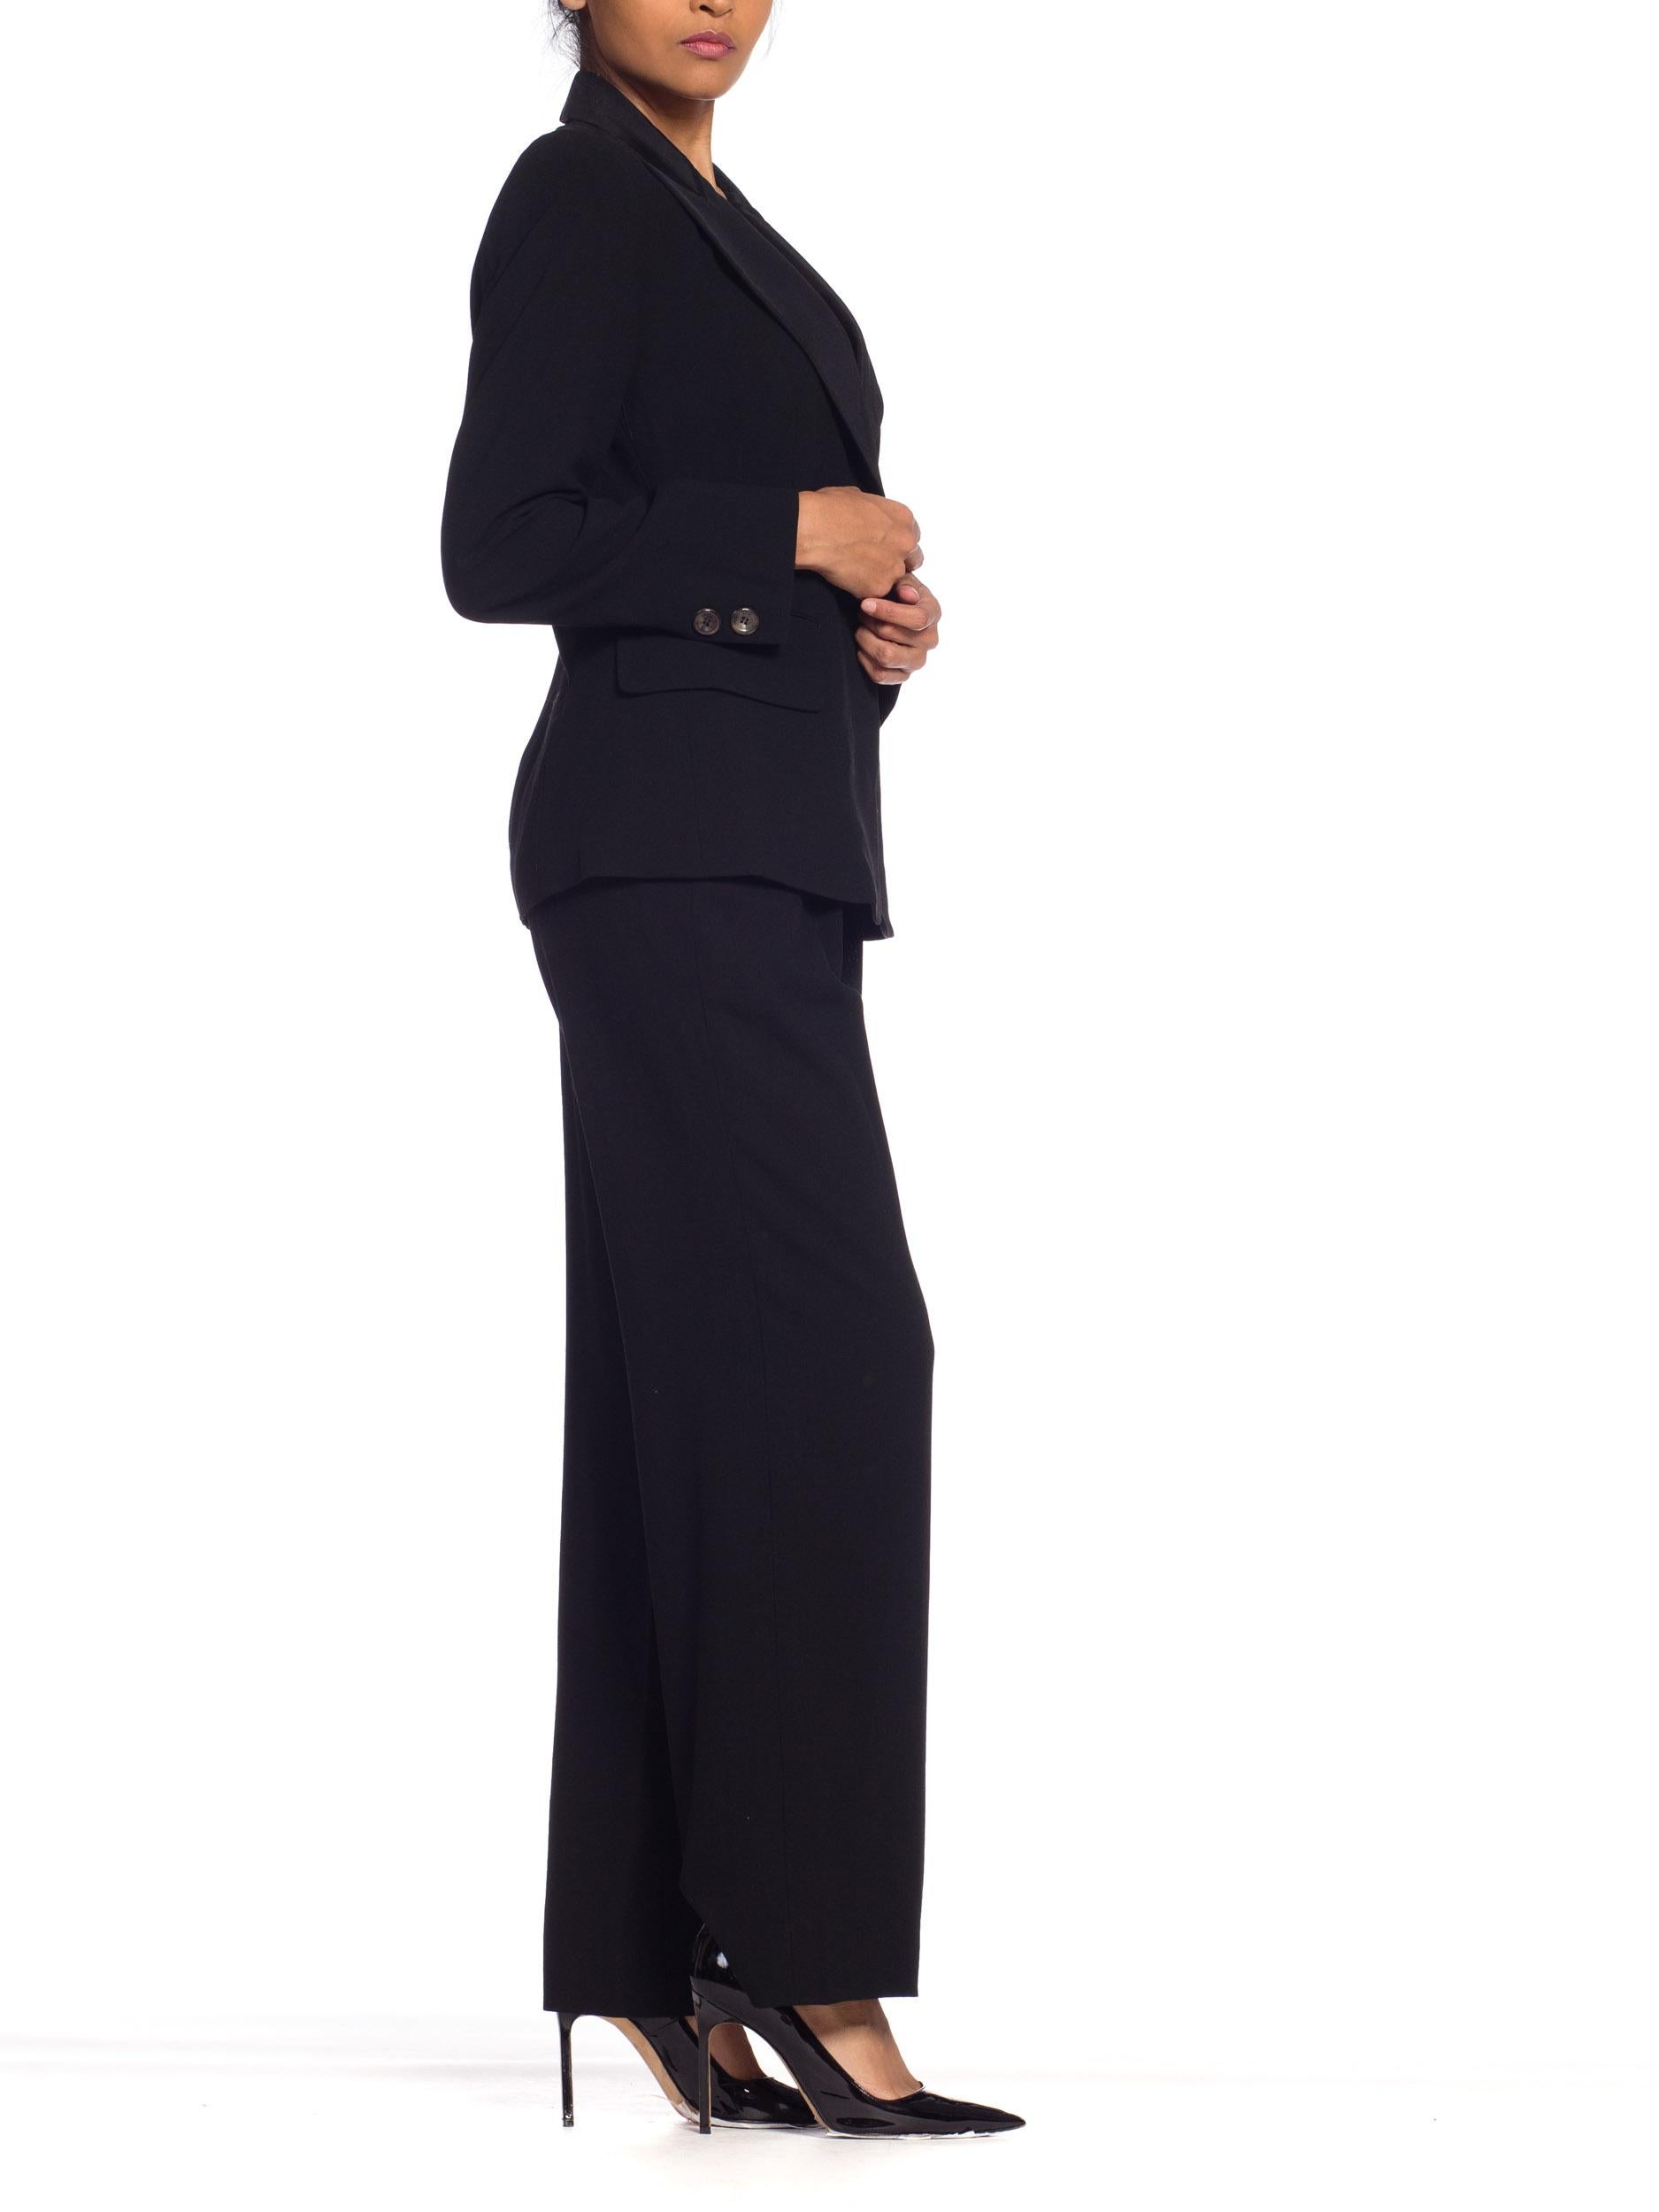 1990s Donna Karan YSL Style Tuxedo NWT 1